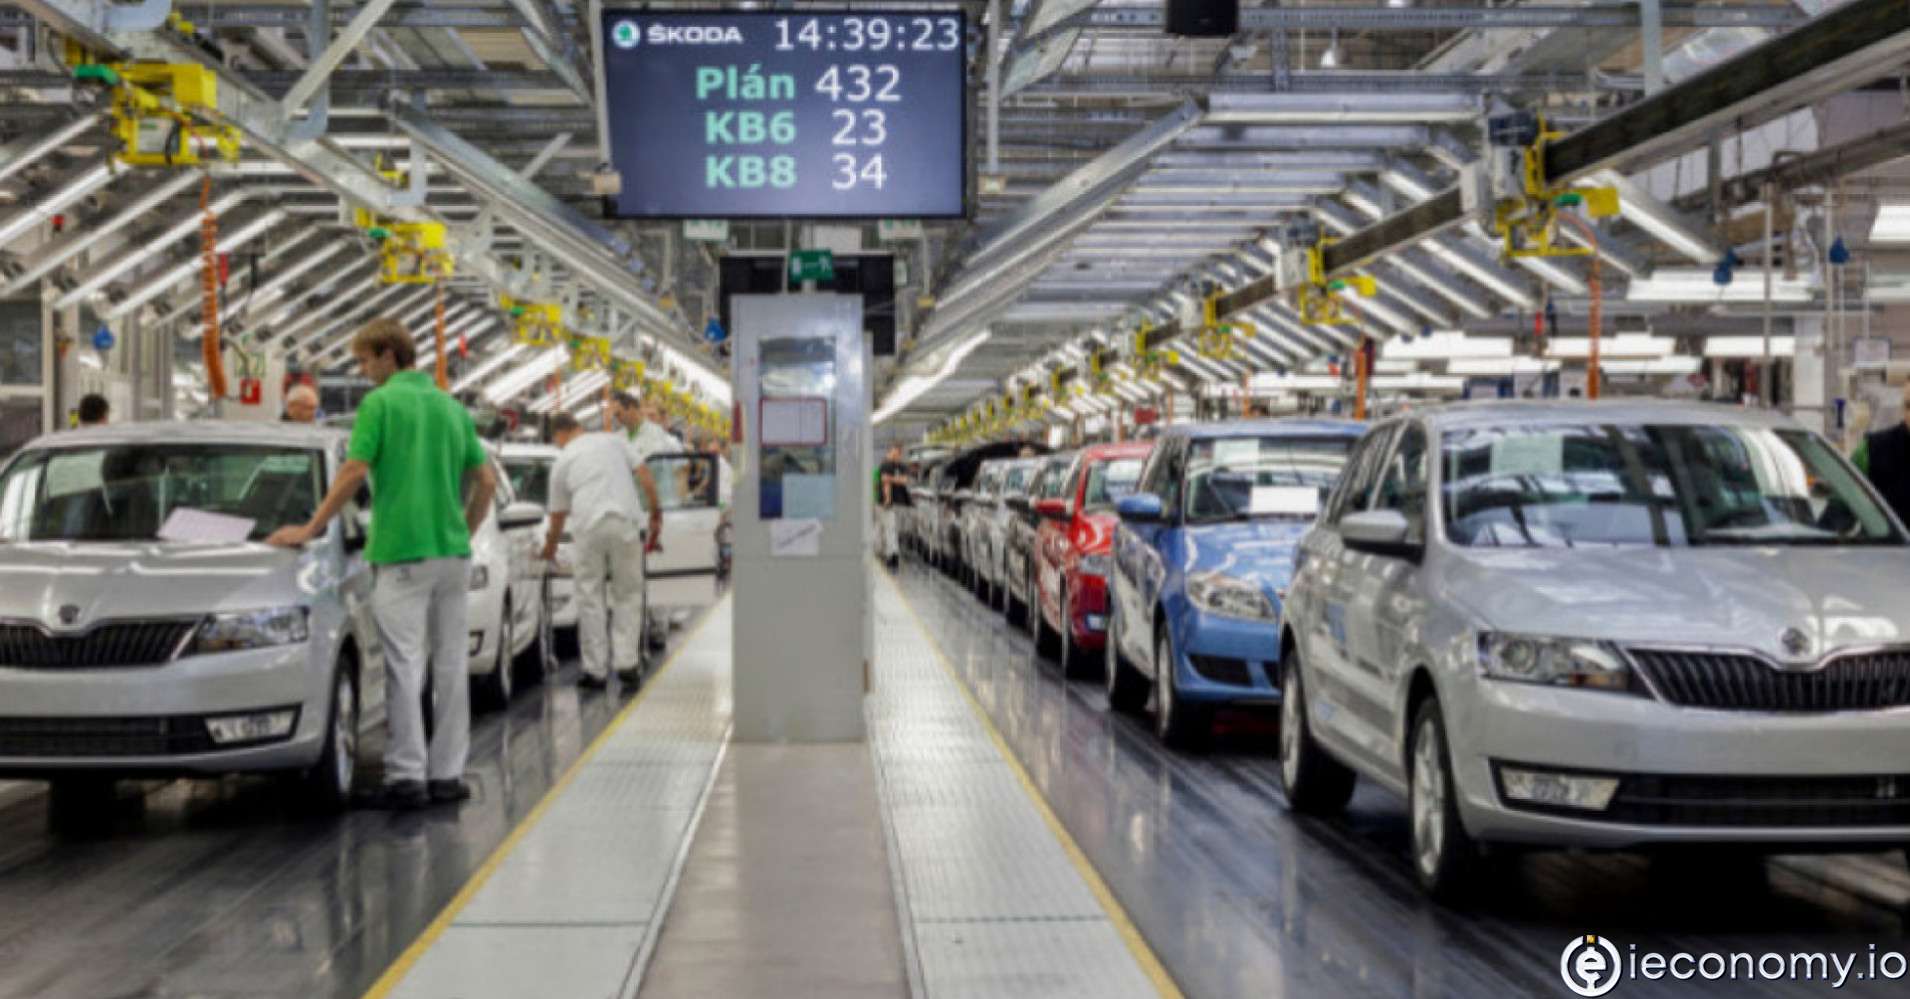 Škoda otomobil fabrikasındaki kapanma Çek ekonomisine zarar verebilir